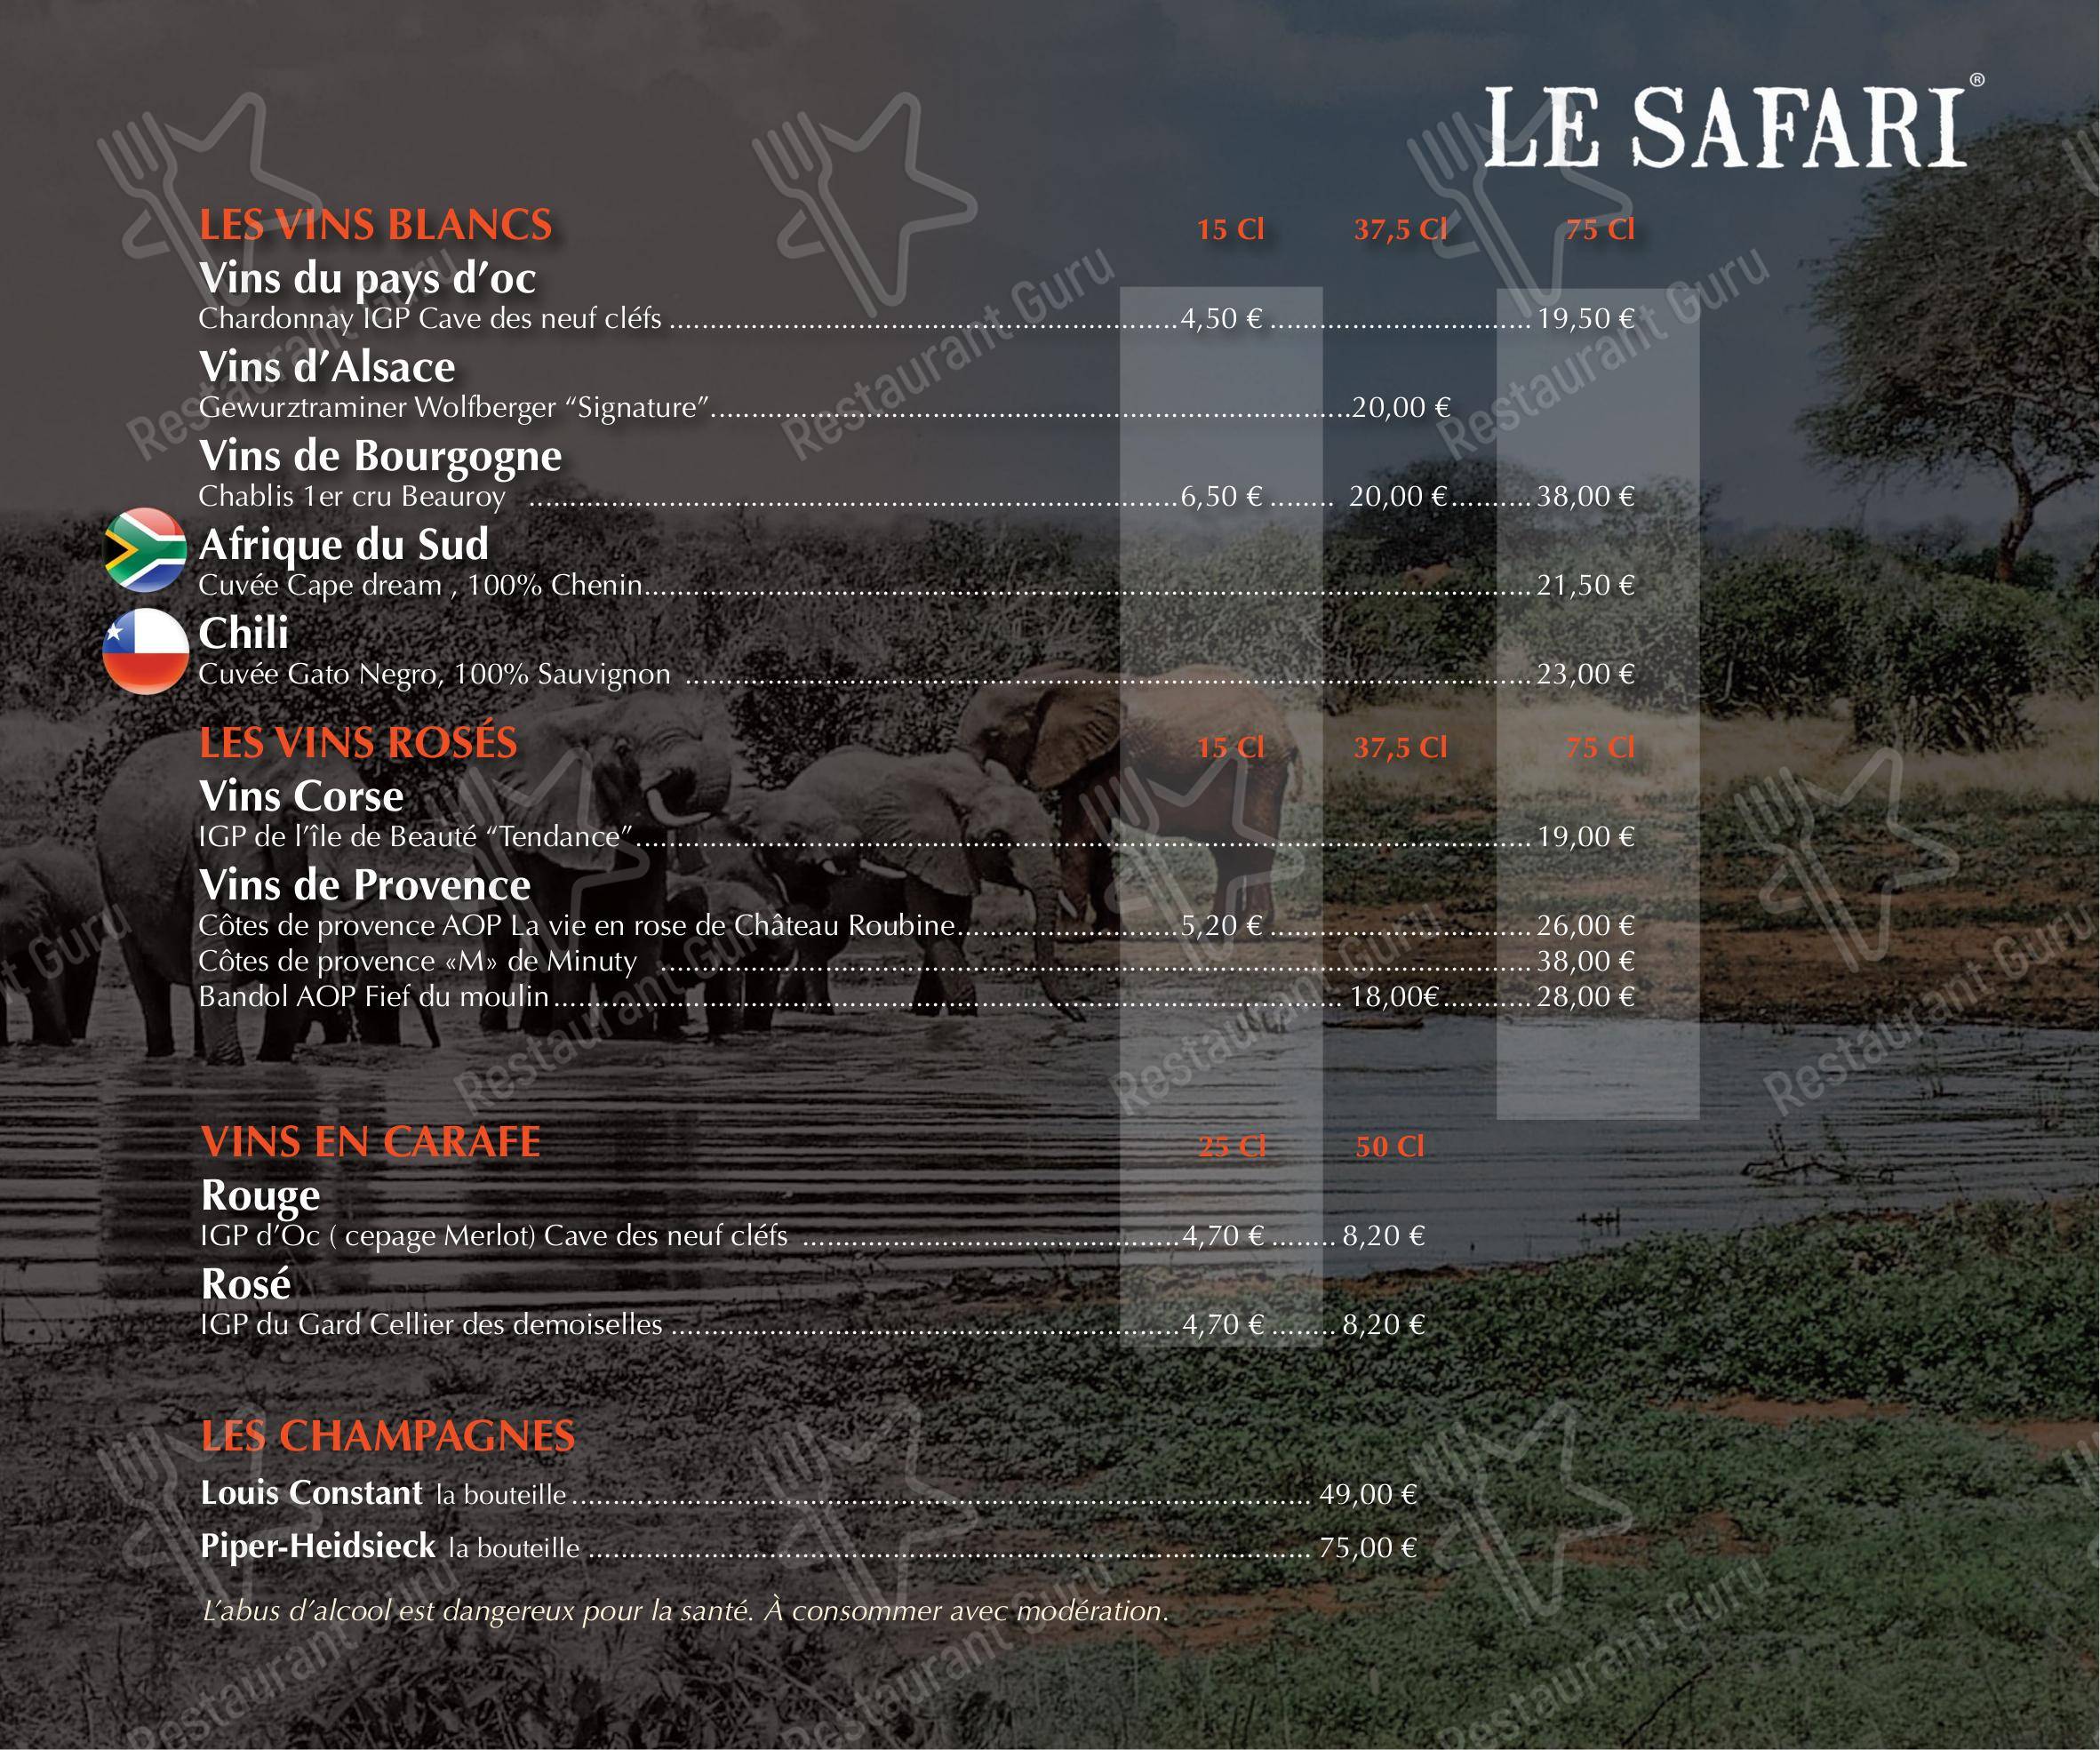 horaire safari etrechy